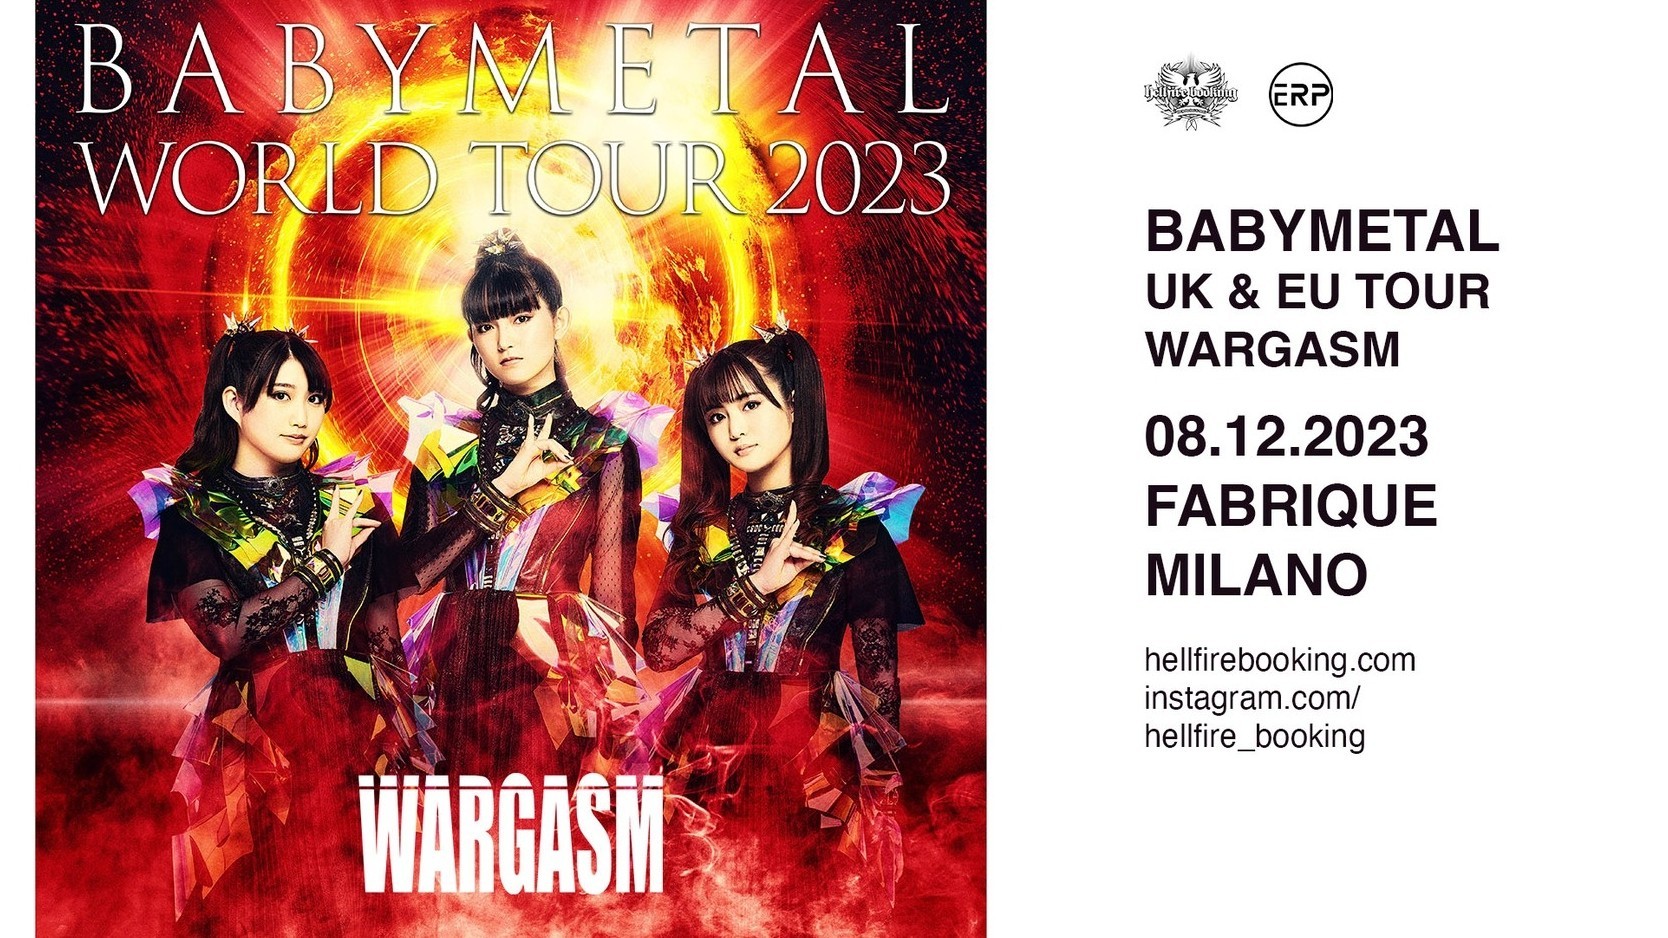 Babymetal "Uk & Eu Tour 2023"